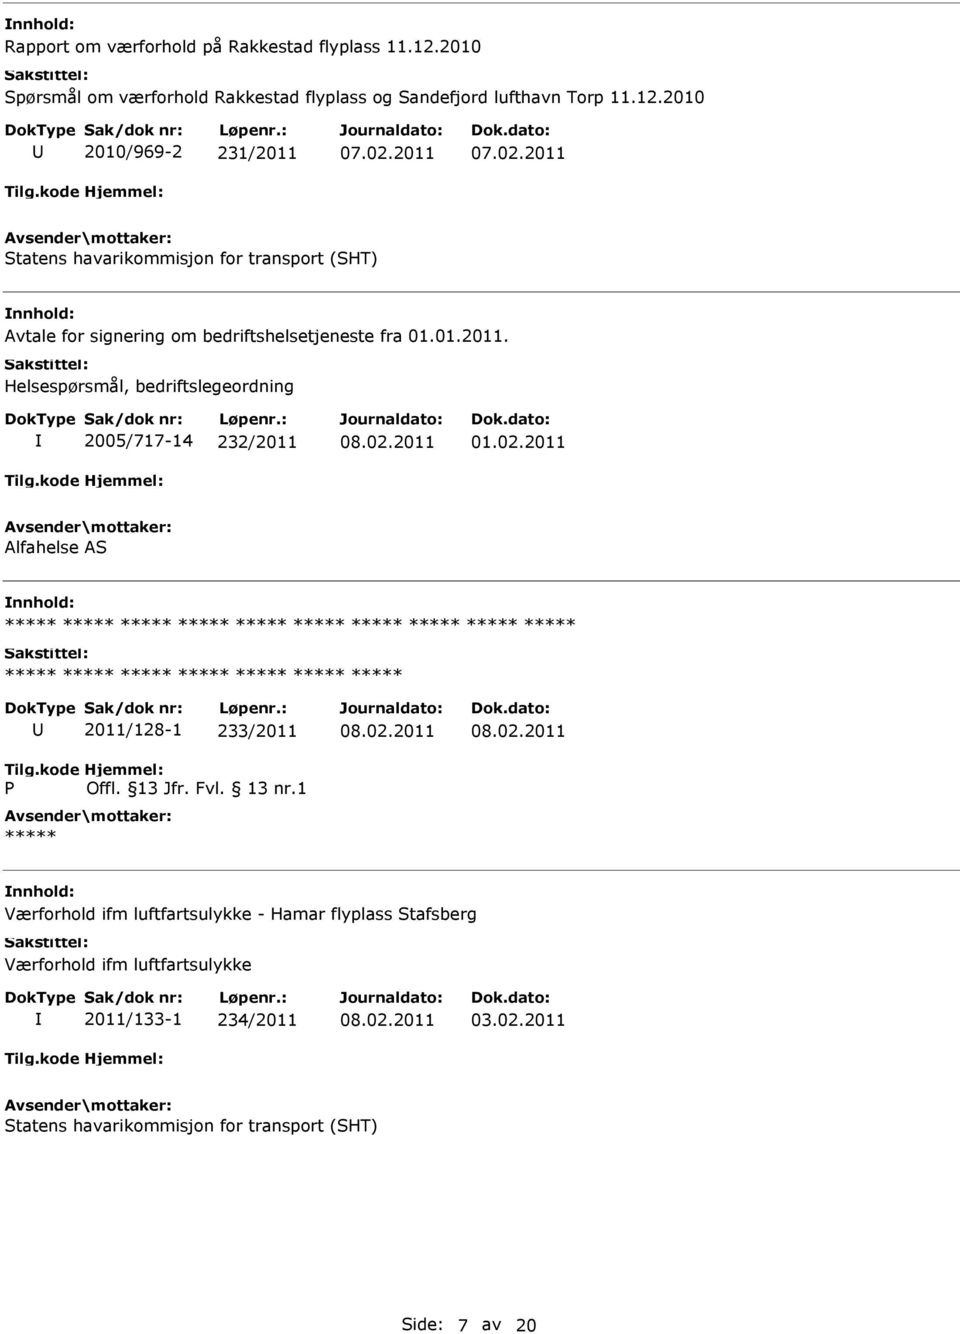 2010 2010/969-2 231/2011 Statens havarikommisjon for transport (SHT) Avtale for signering om bedriftshelsetjeneste fra 01.01.2011. Helsespørsmål, bedriftslegeordning 2005/717-14 232/2011 01.